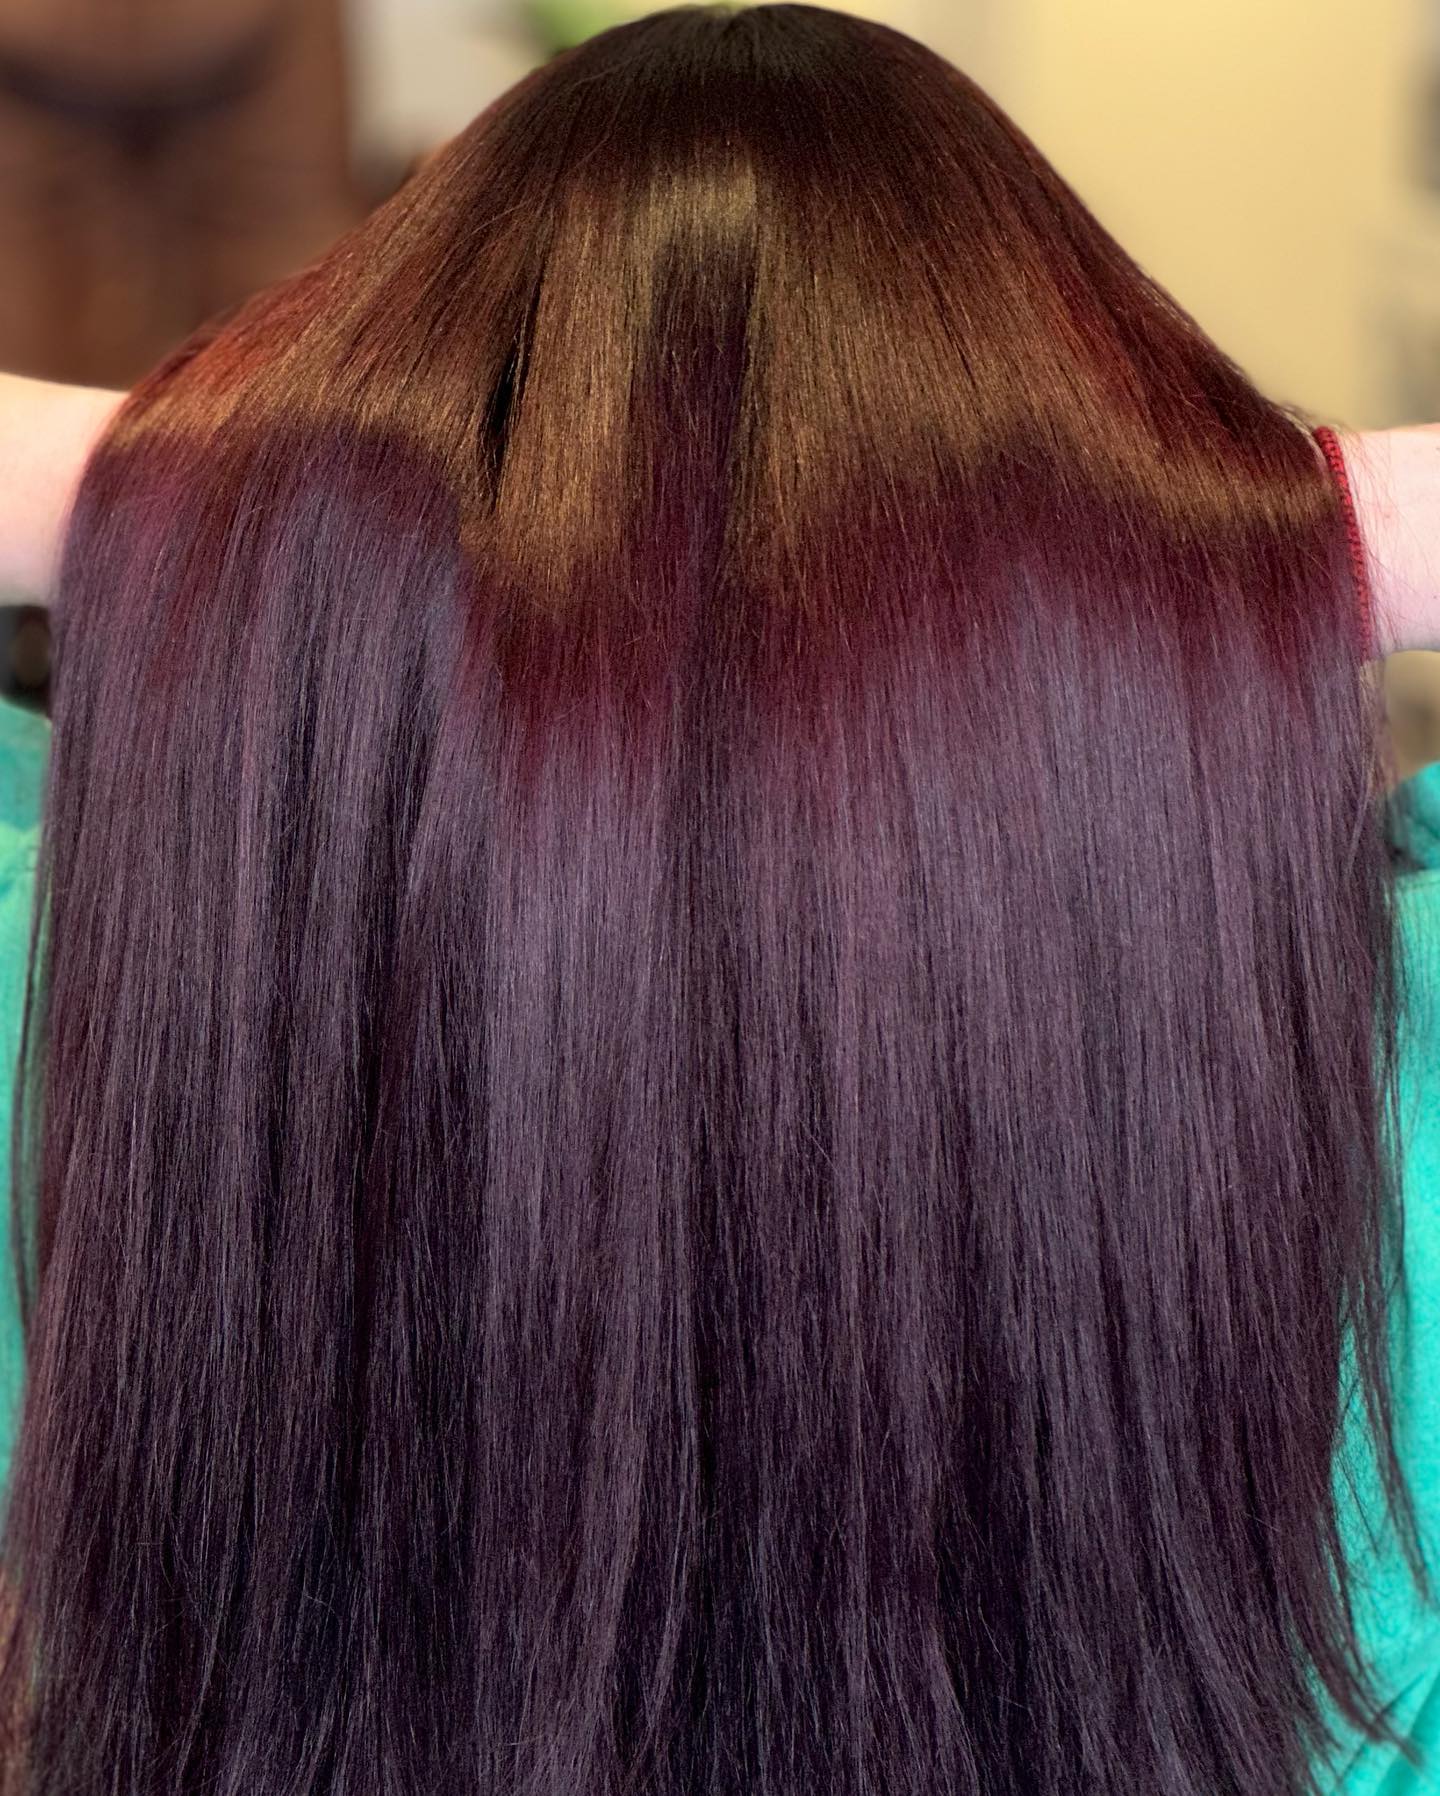 Burgundy hair color 57 burgundy hair color | burgundy hair color for women | burgundy hair color highlights Burgundy Hair Color